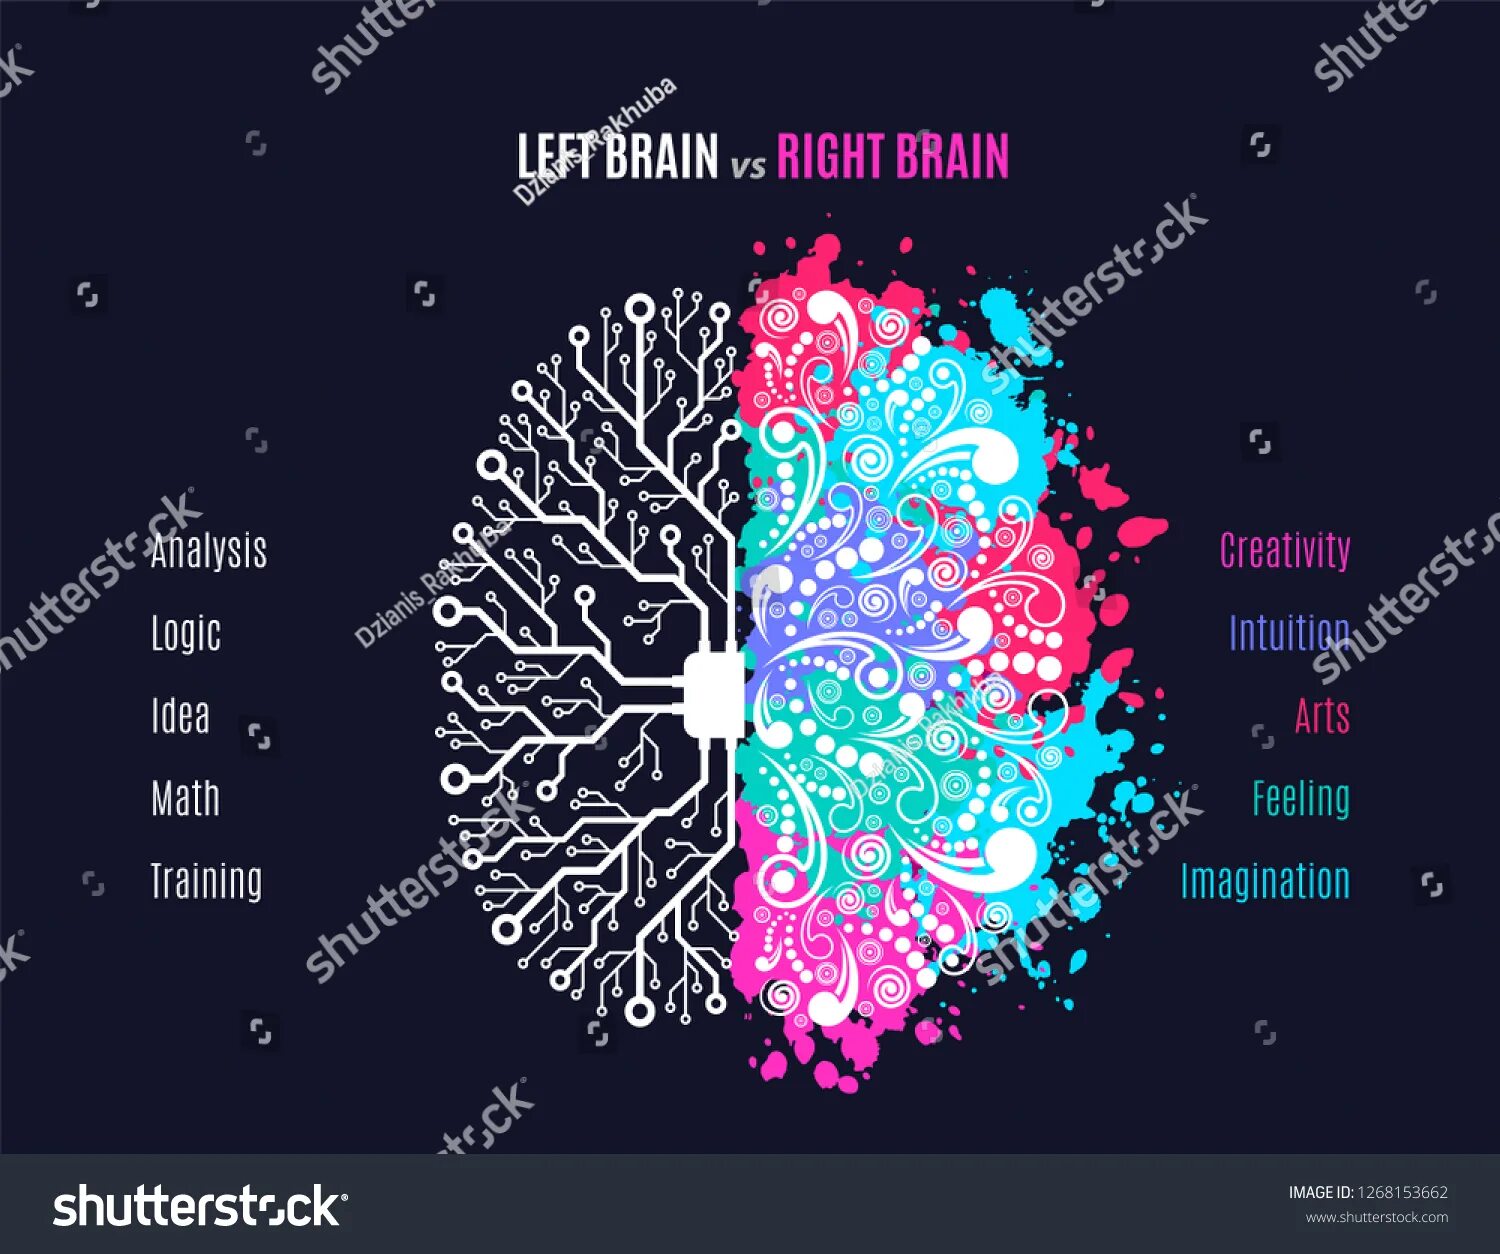 Left Brain vs right Brain. Brain left and right Hemisphere. Left Brain versus right Brain. Left and right Brain idea. Brain vs brain